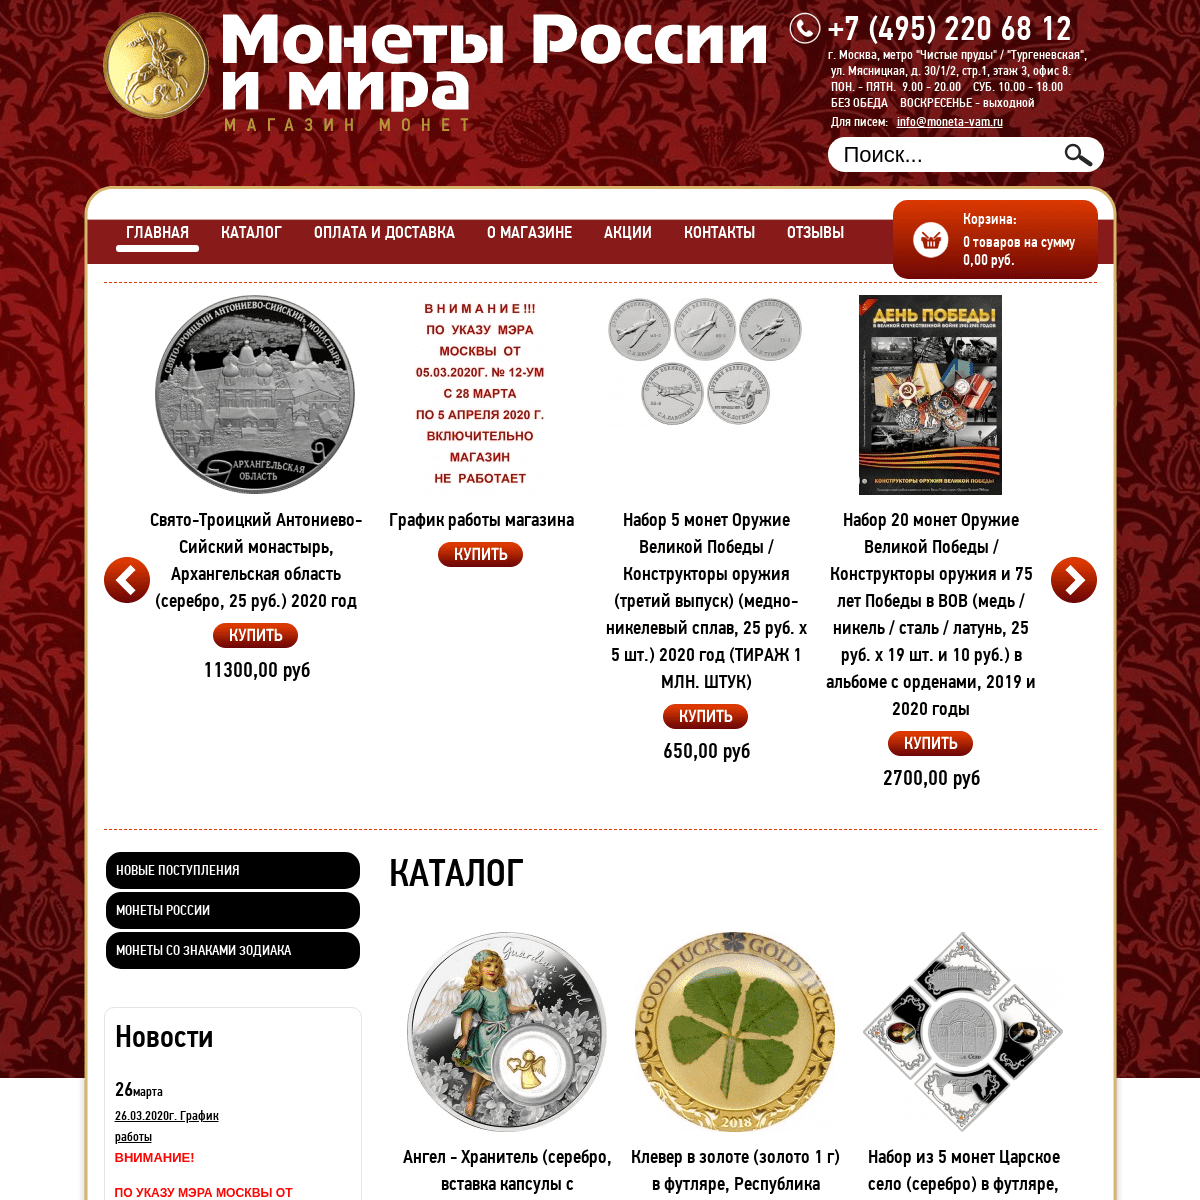 A complete backup of moneta-vam.ru